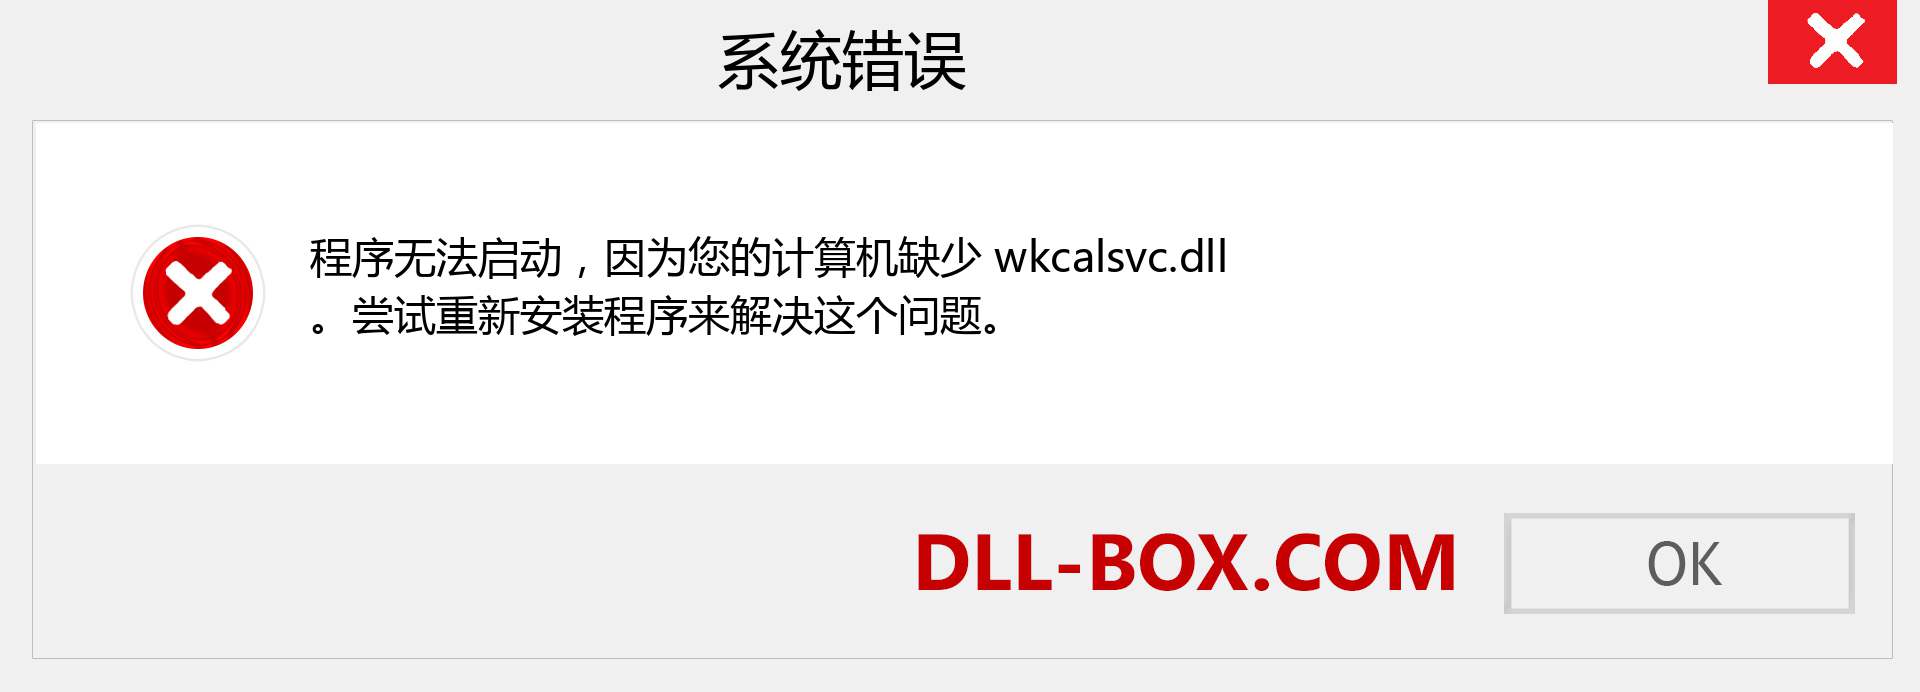 wkcalsvc.dll 文件丢失？。 适用于 Windows 7、8、10 的下载 - 修复 Windows、照片、图像上的 wkcalsvc dll 丢失错误